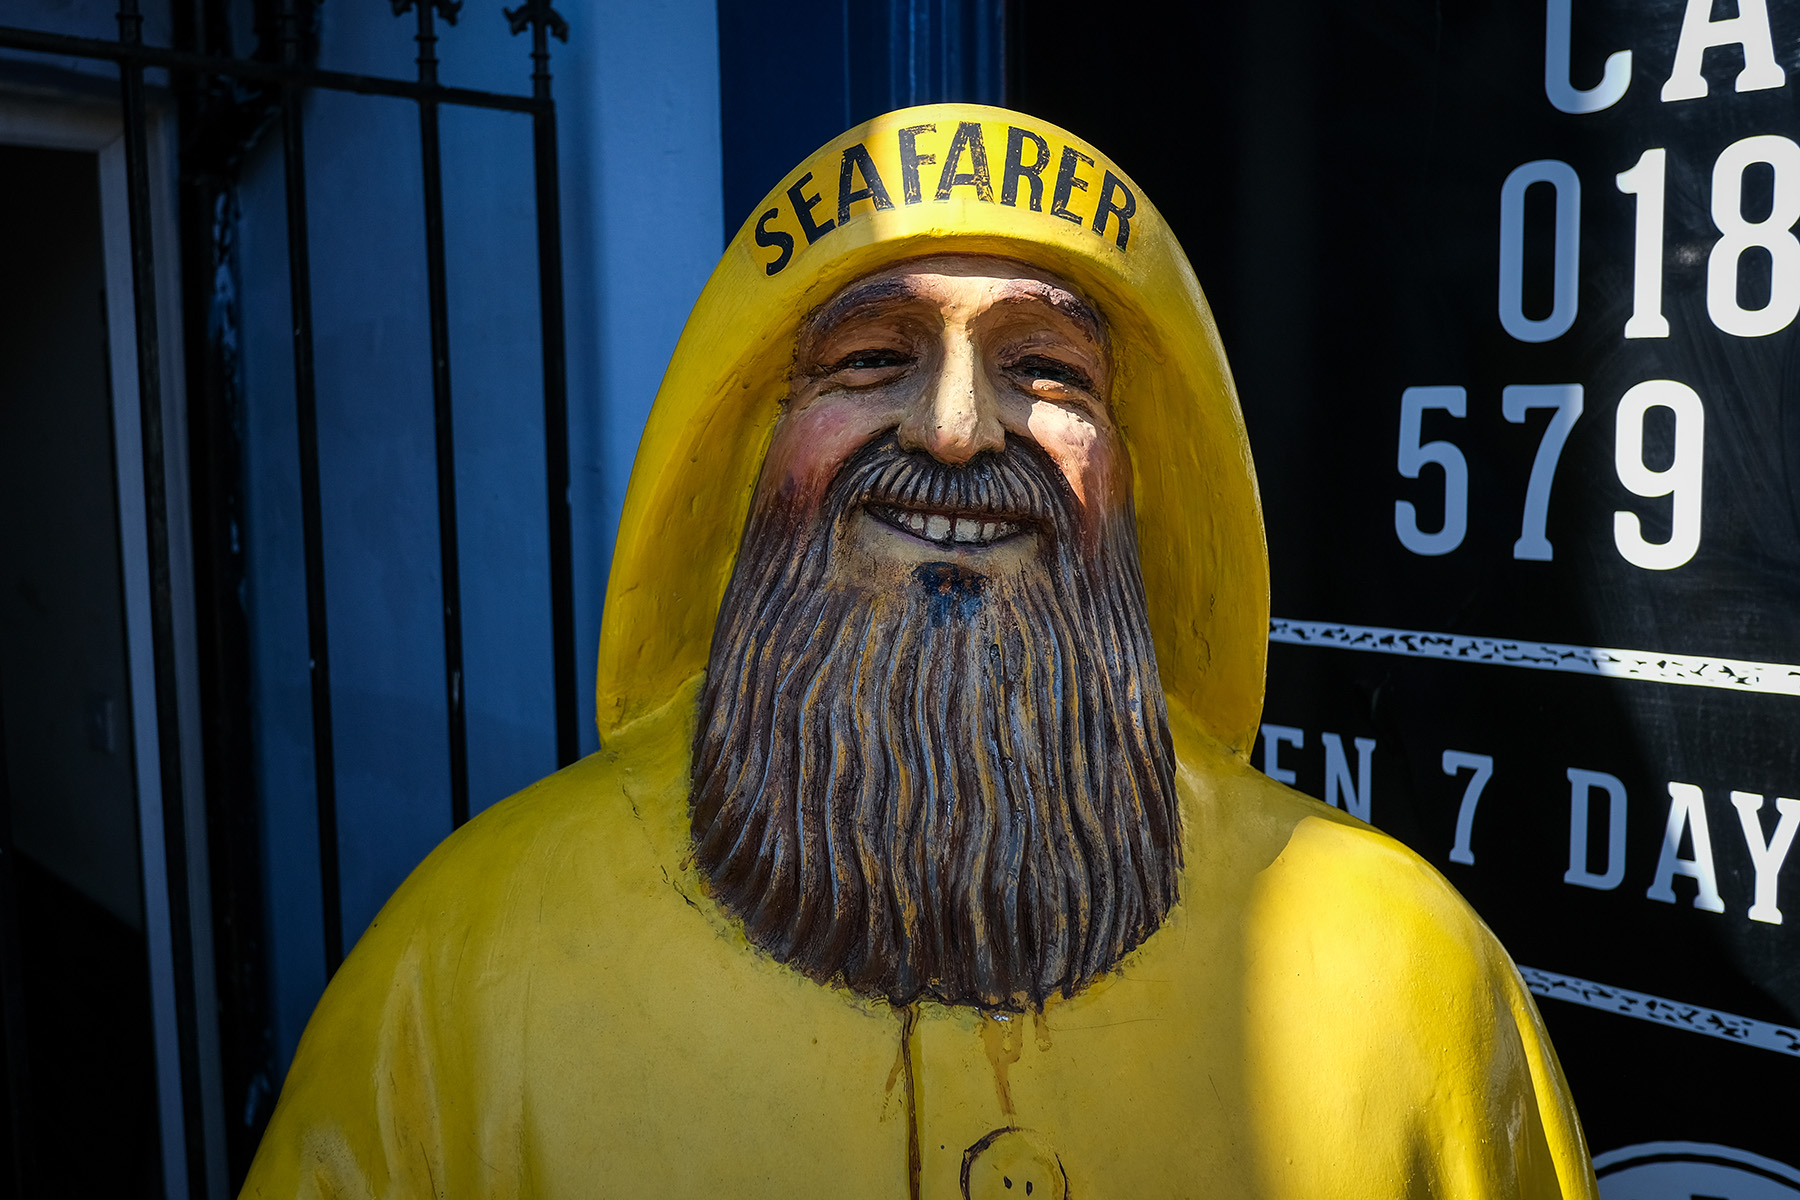 smiling sea farer statue